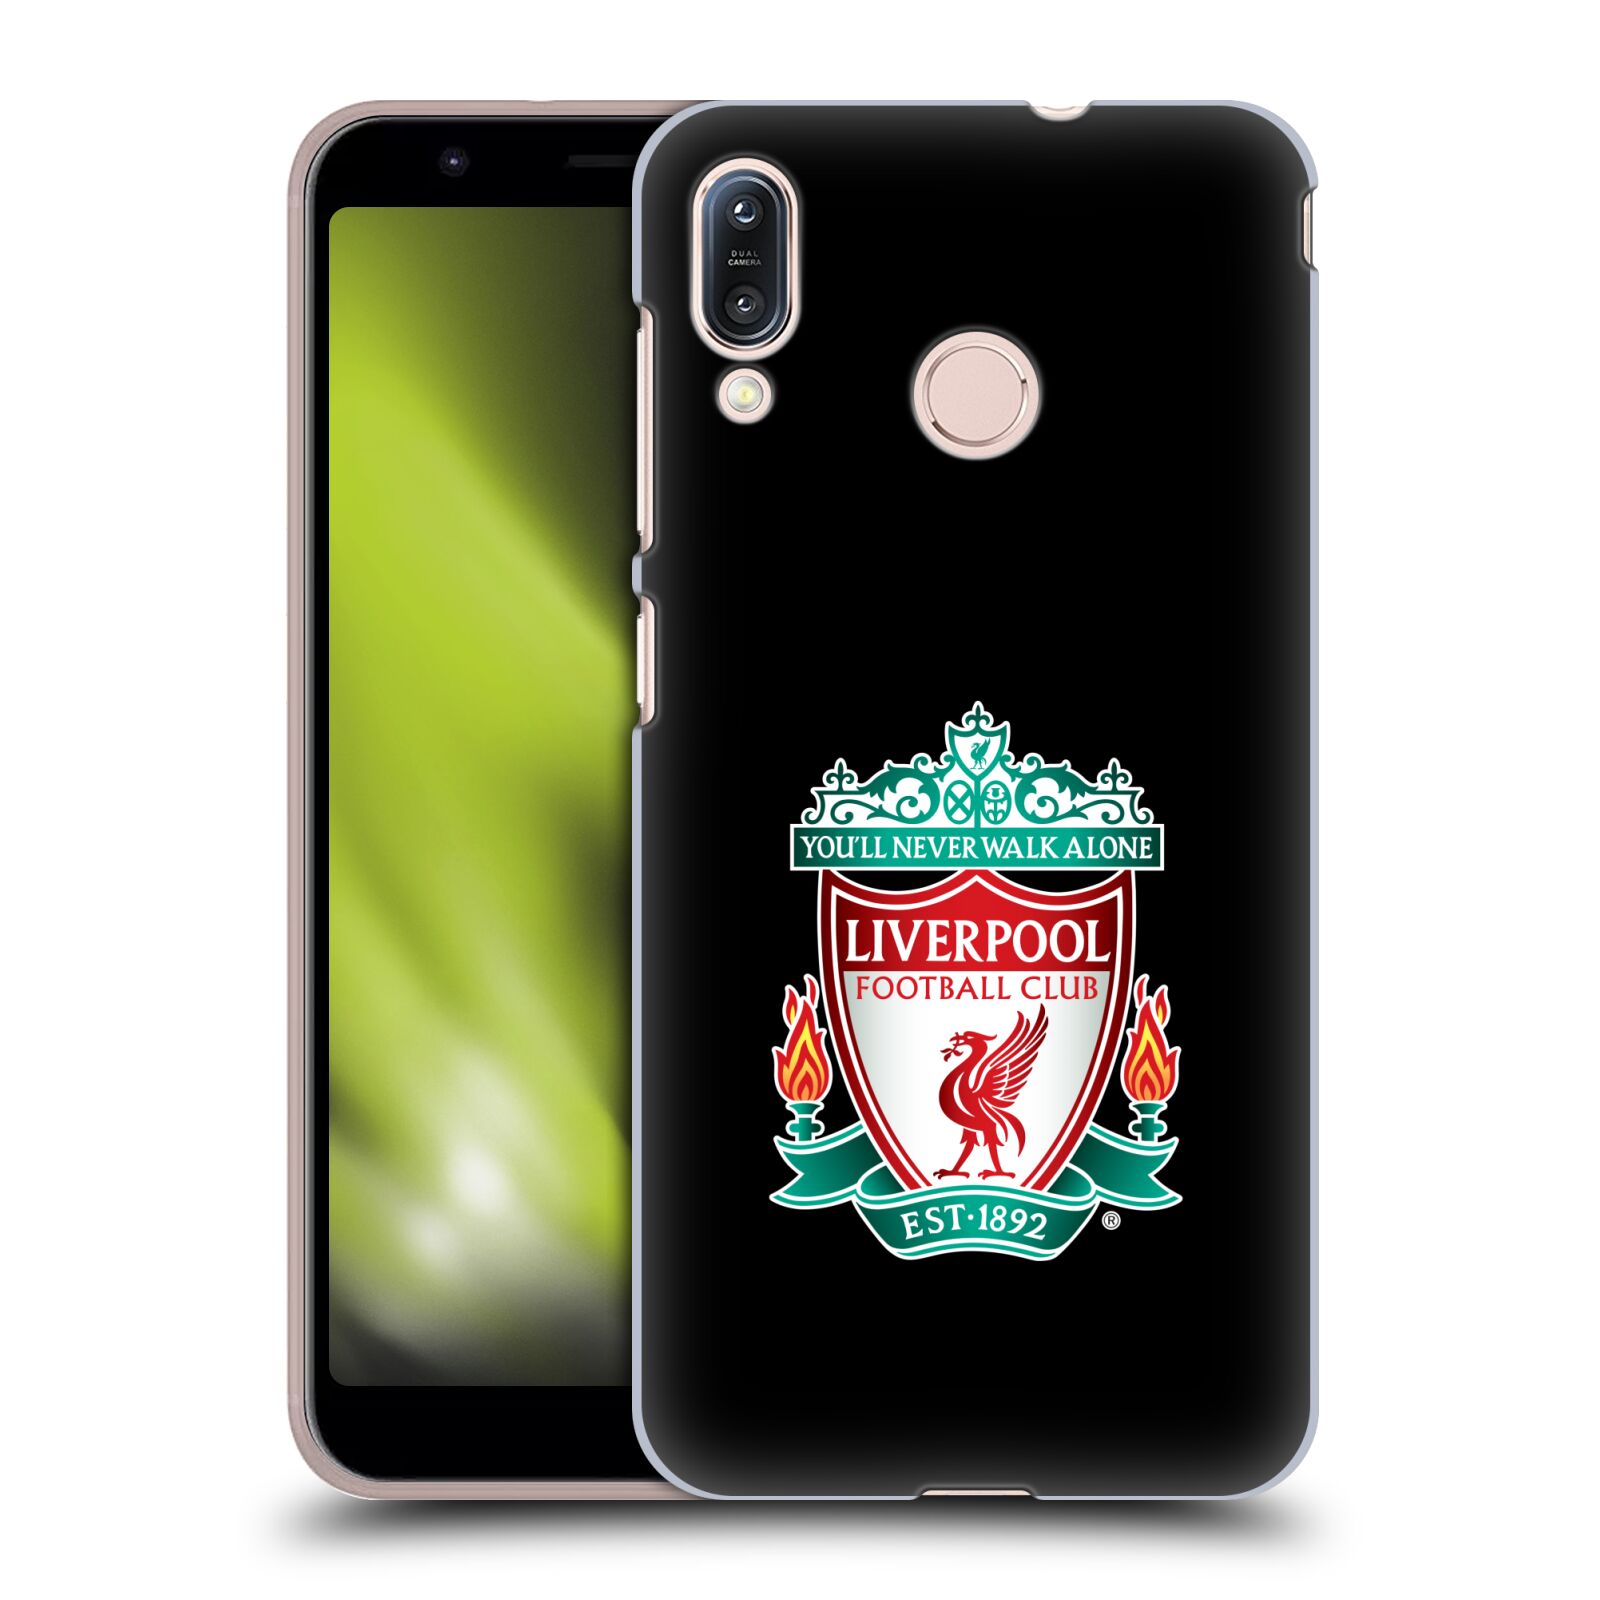 Pouzdro na mobil Asus Zenfone Max M1 (ZB555KL) - HEAD CASE - Fotbalový klub Liverpool barevný znak černé pozadí